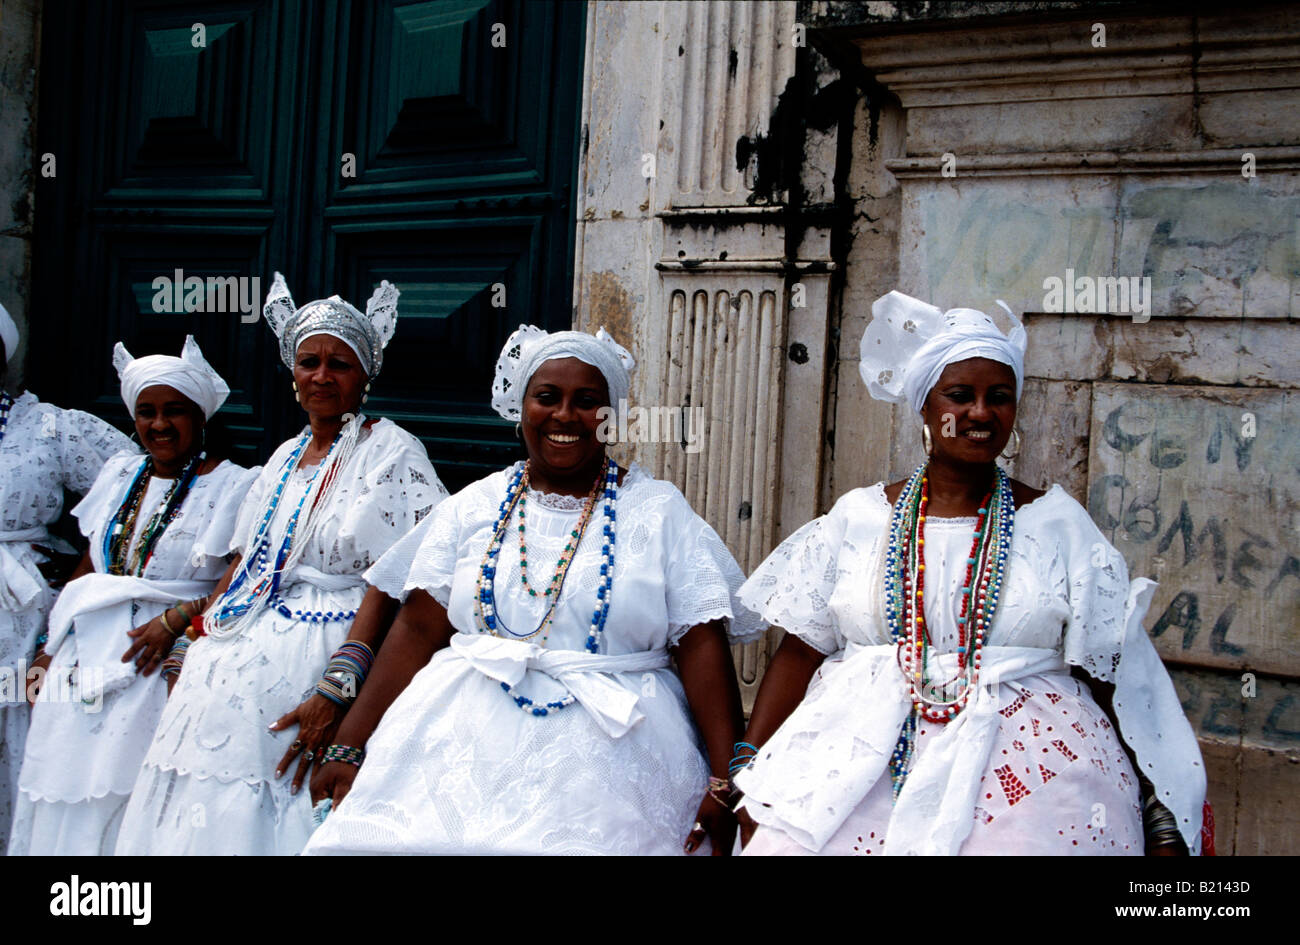 Baianas in traditional dress on Largo de Pelourinho Salvador de Bahia Brazil Stock Photo